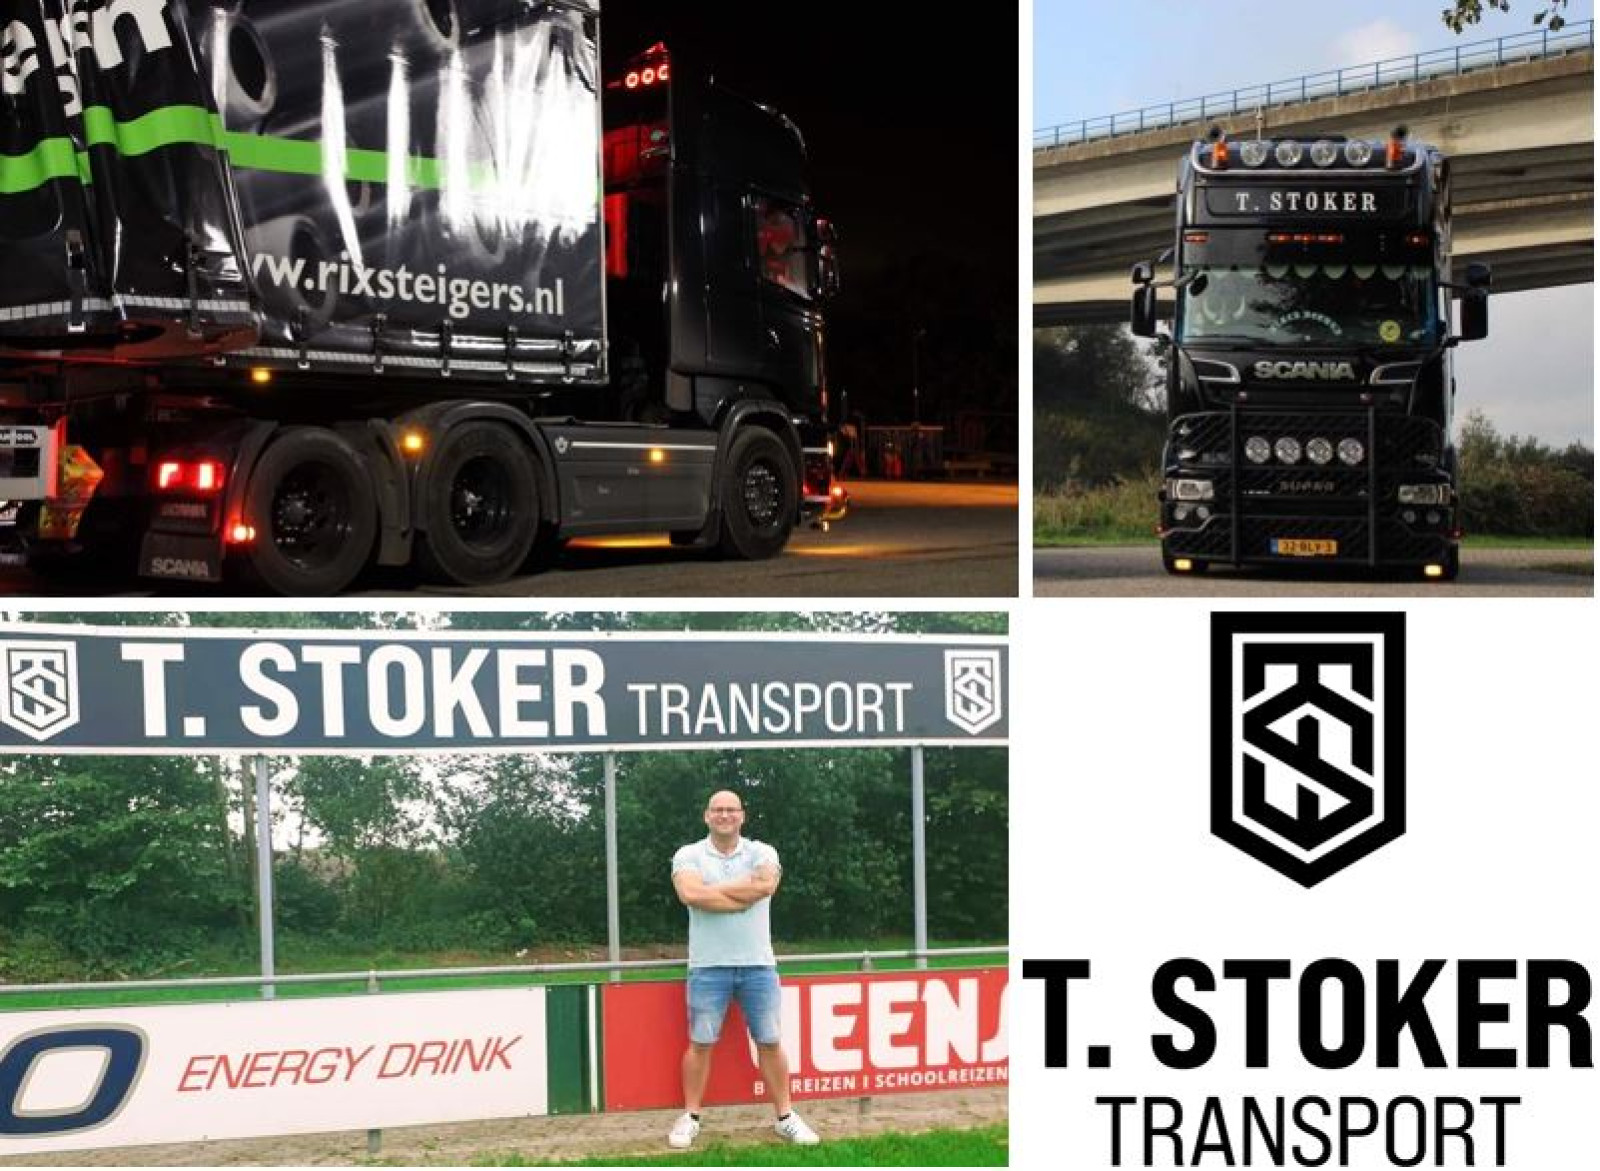 T. Stoker transport